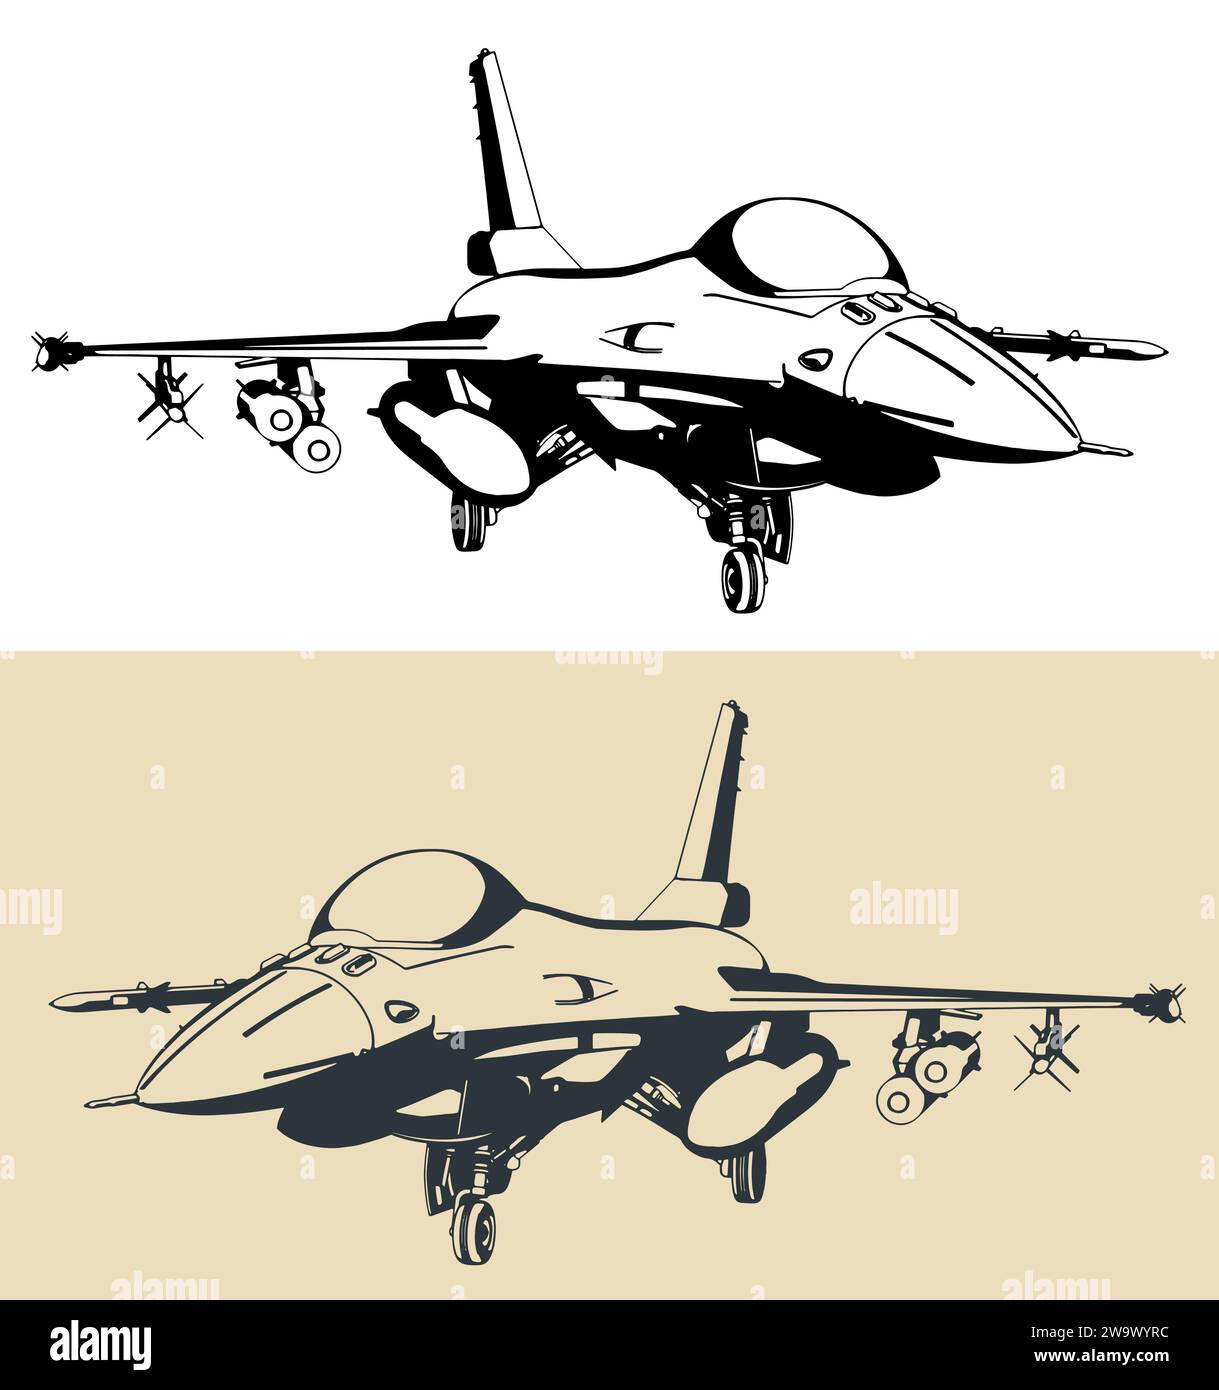 Disegno stilizzato di un moderno aereo militare F-16 caccia leggero multiruolo Illustrazione Vettoriale